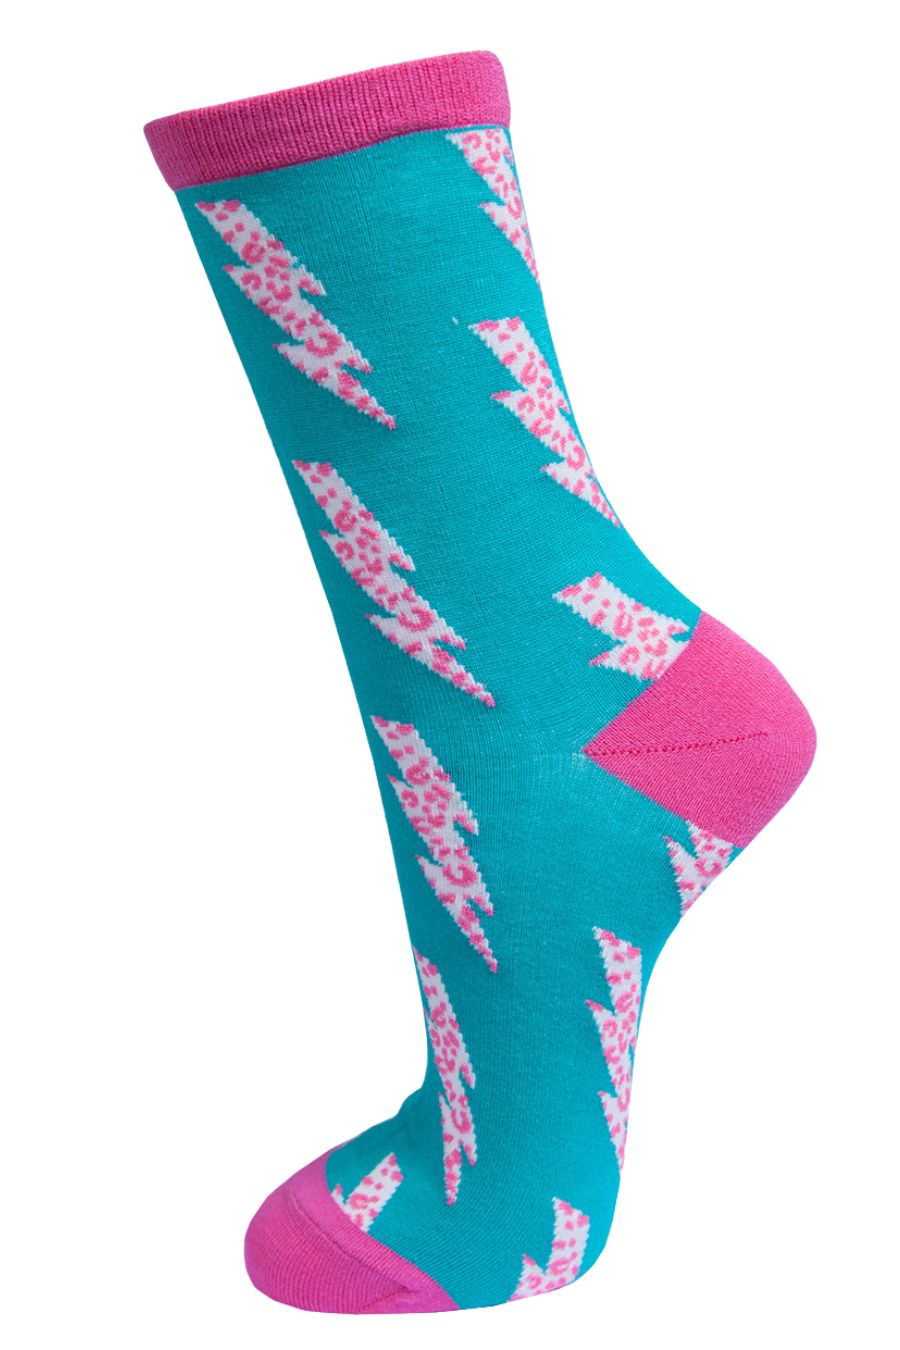 Womens Bamboo Socks Leopard Print Ankle Socks Lightning Bolt Blue – MSH ...